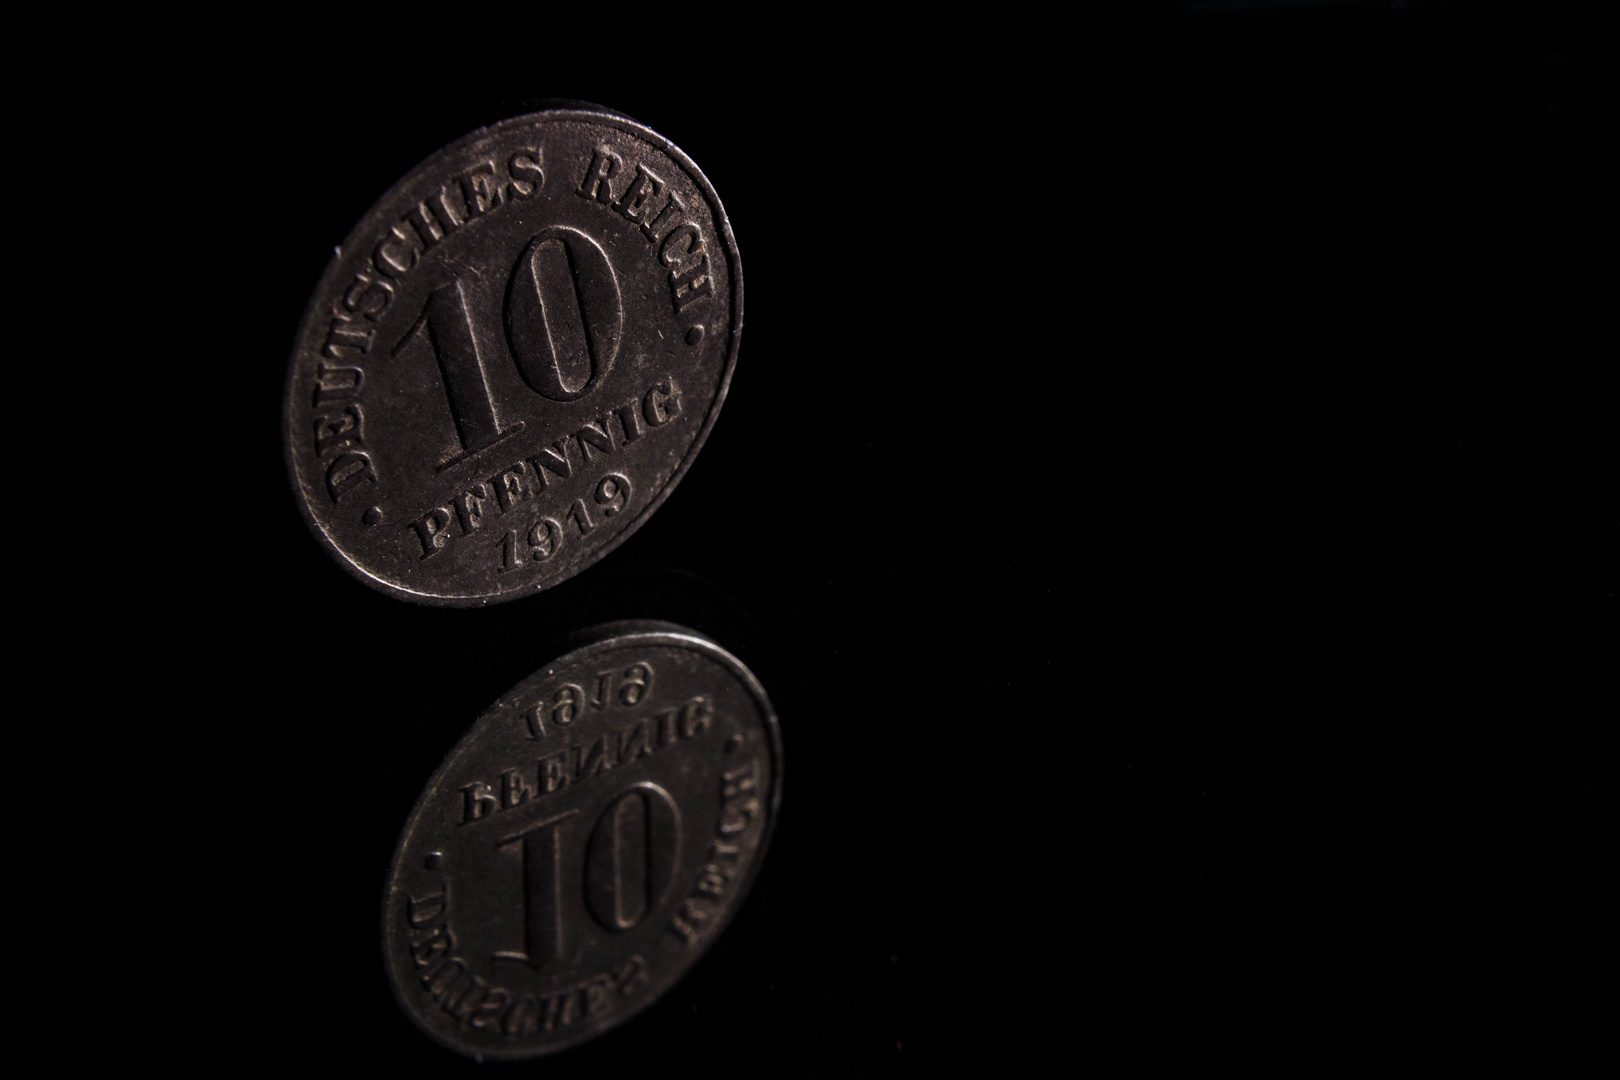 10 Pfennig (Deutsches Reich - 1919)